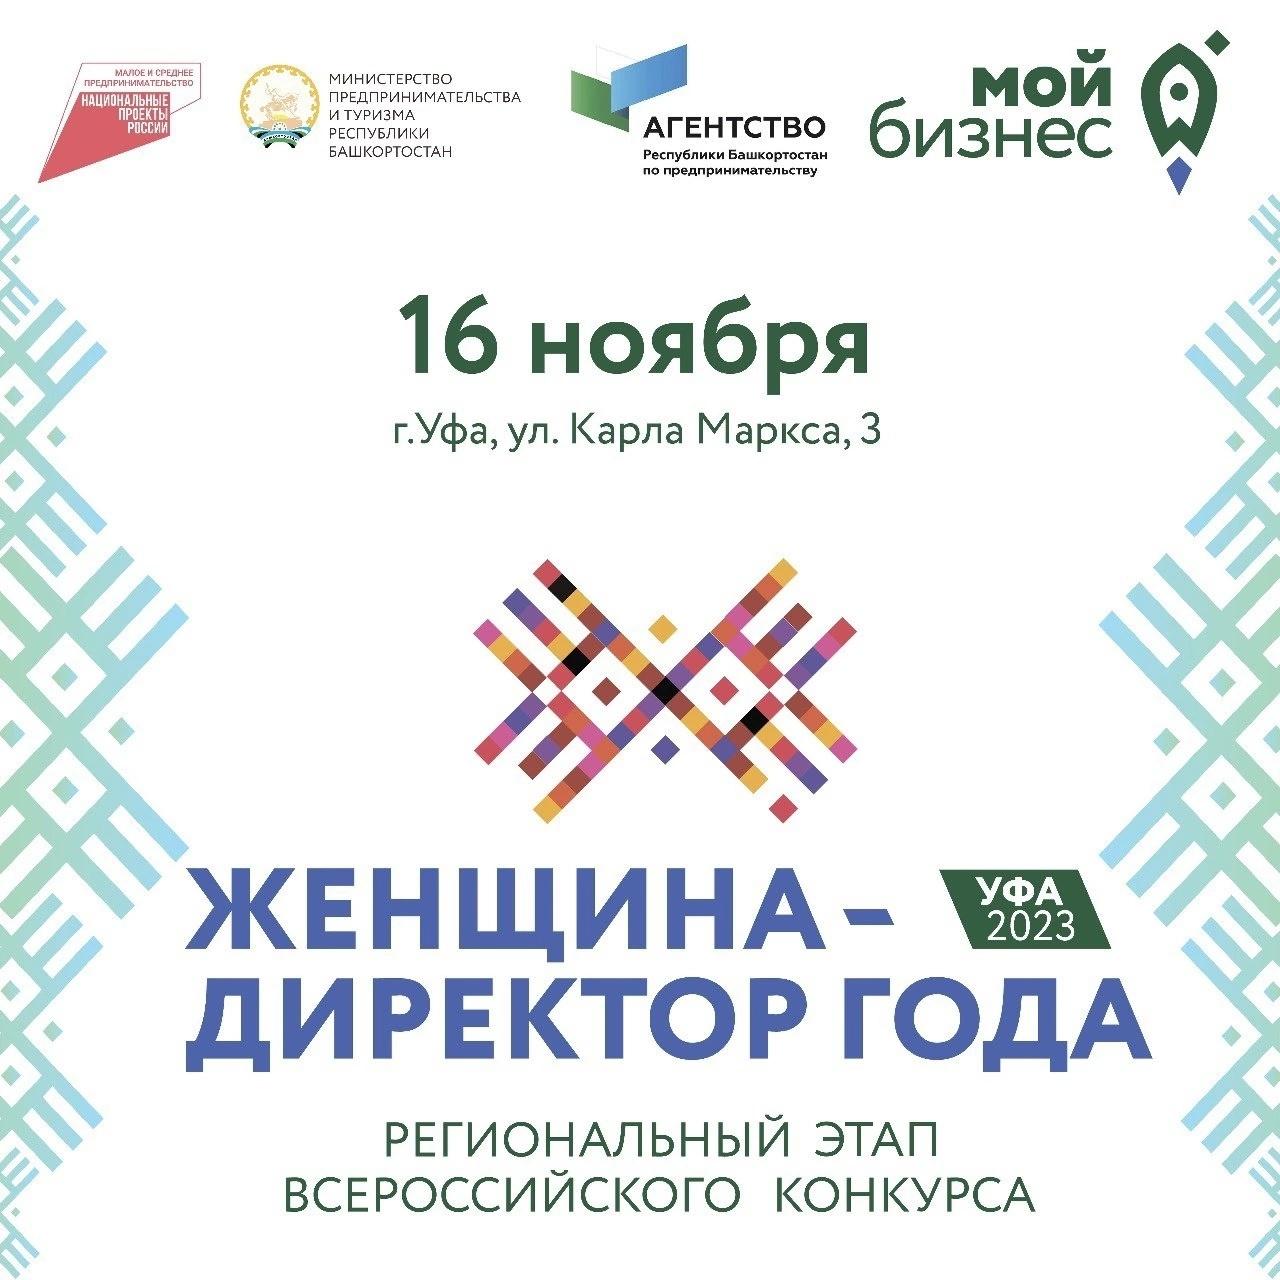 Уже в этот четверг состоится Региональный этап Всероссийского конкурса «Женщина — директор года».